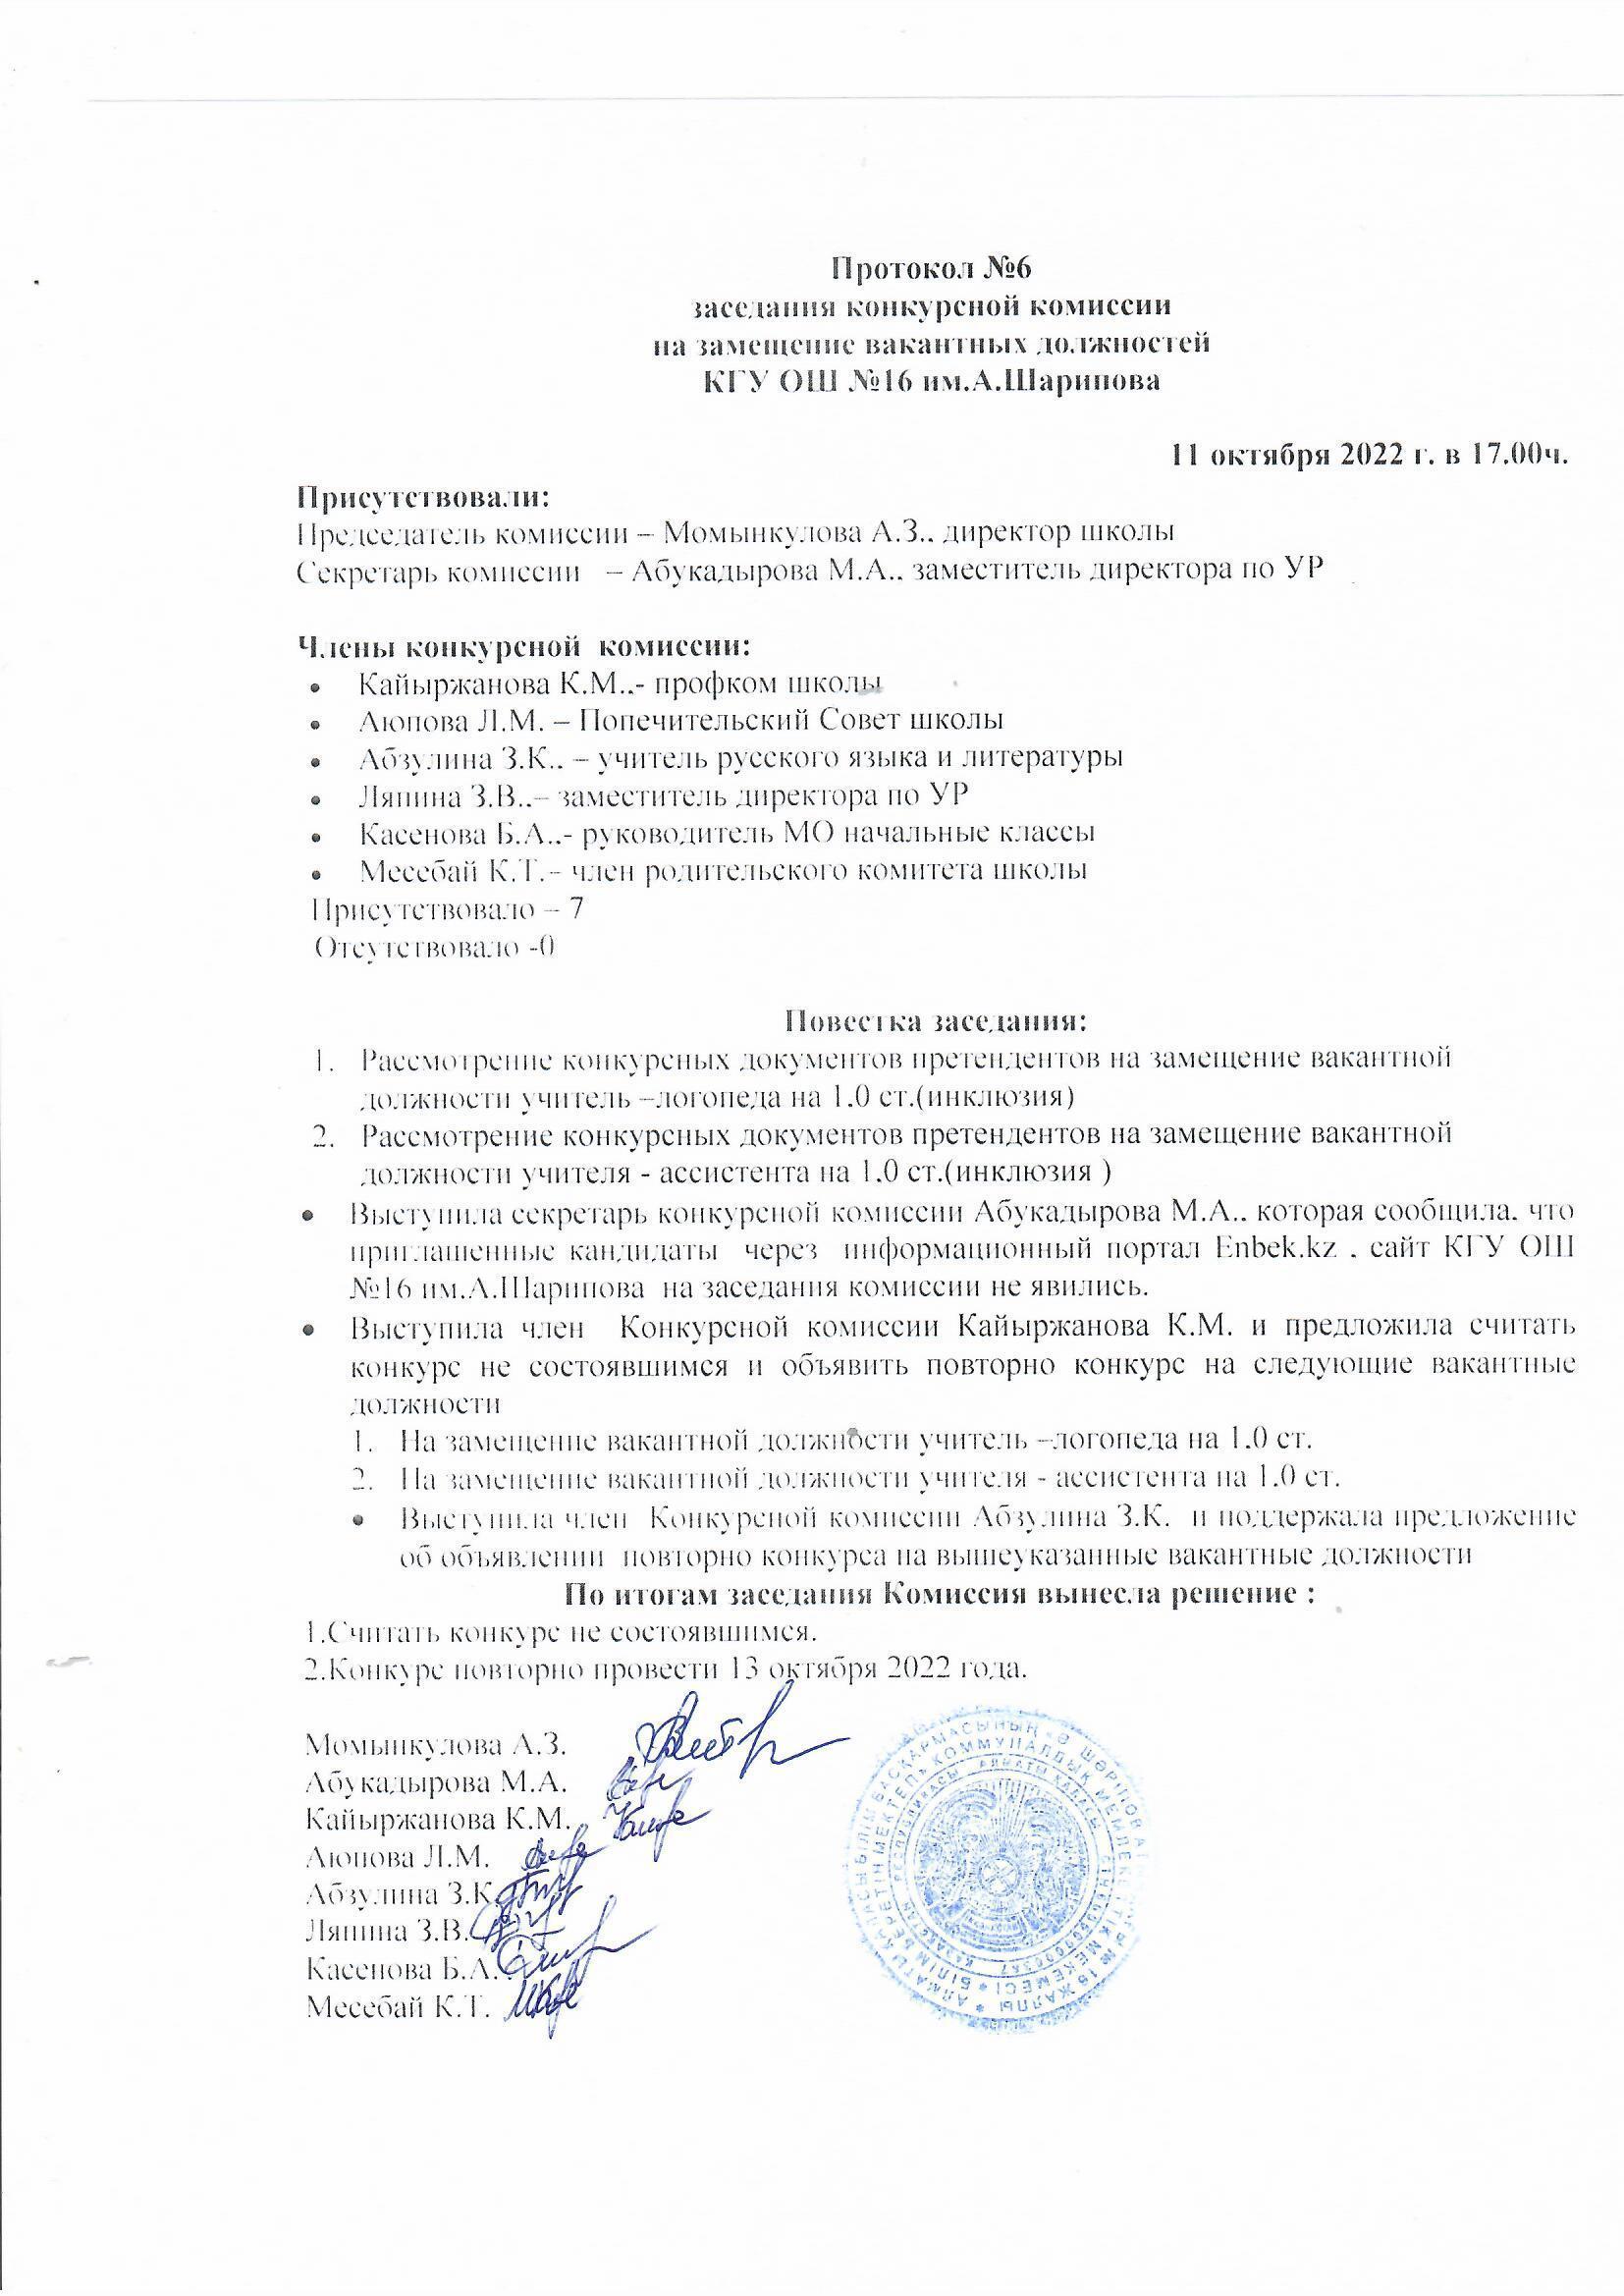 Протокол №6 заседания конкурсной комиссии на замещение вакантных должностей КГУ ОШ №16 им. А.Шарипова